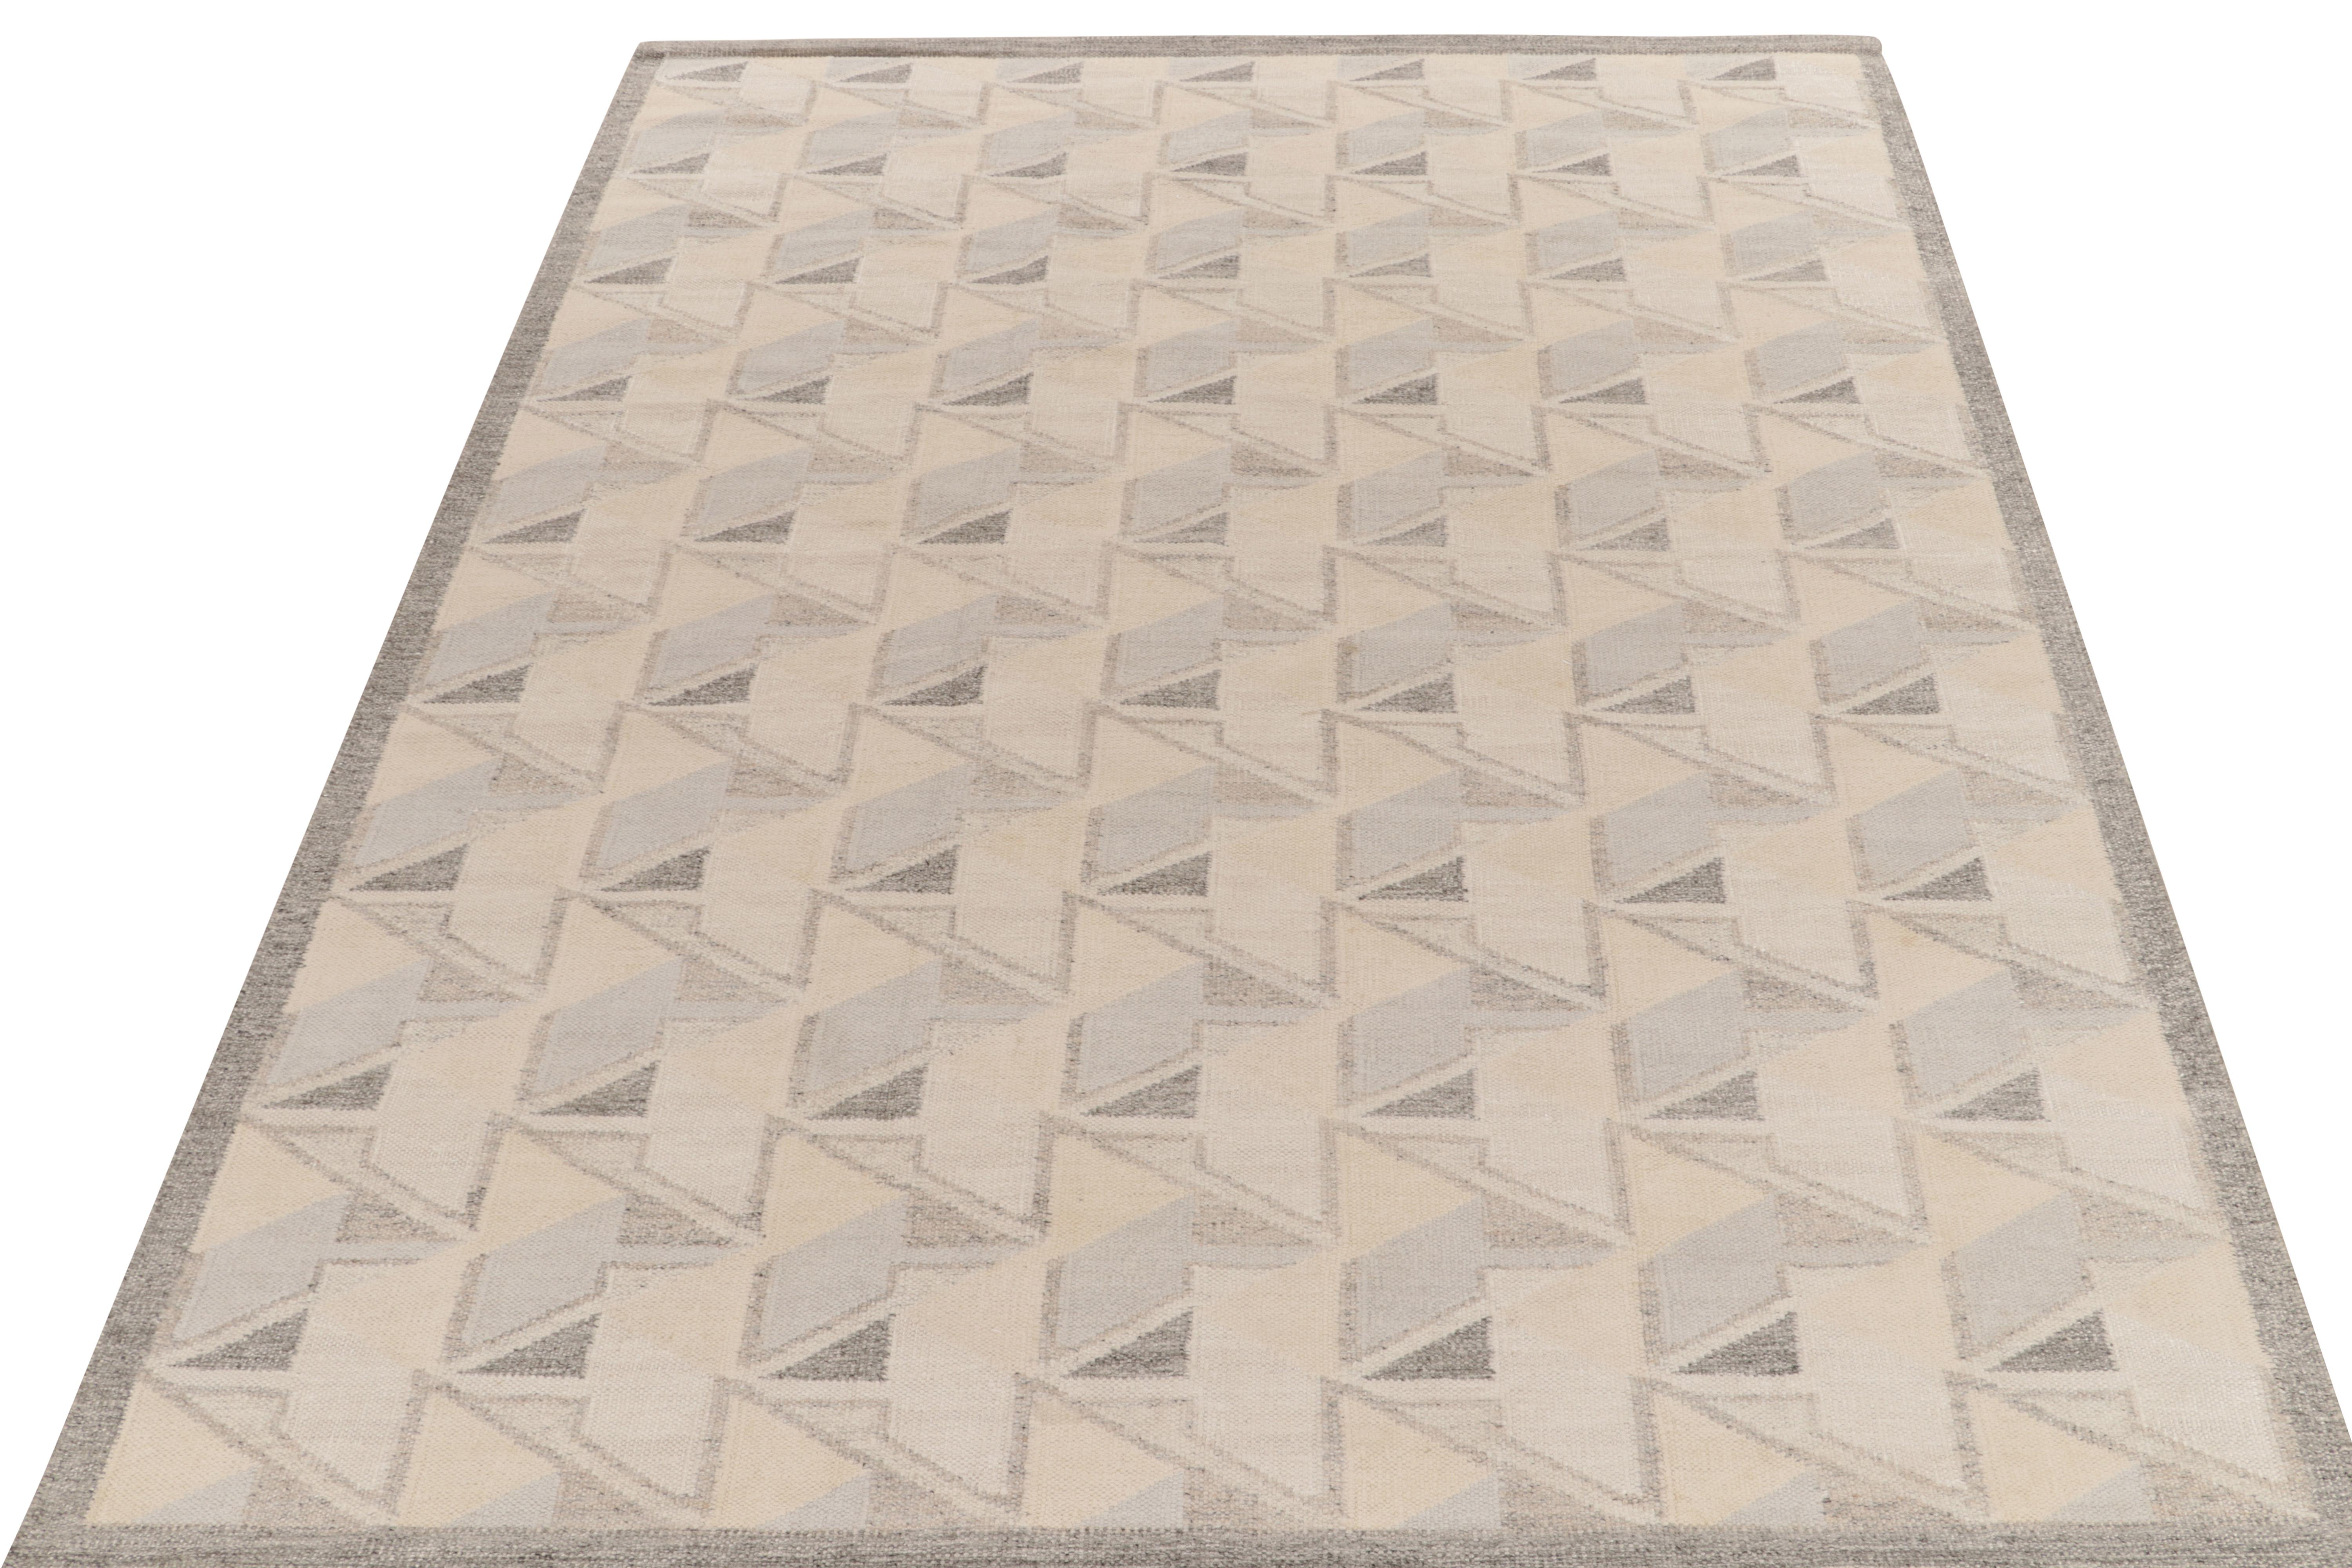 Le kilim de style scandinave de Rug & Kilim est issu de notre célèbre collection de tissage plat. Ce tapis 9x12 bénéficie de la finesse de l'esthétique suédoise avec un motif géométrique dextre qui donne une impression de 3D. La gamme de couleurs en